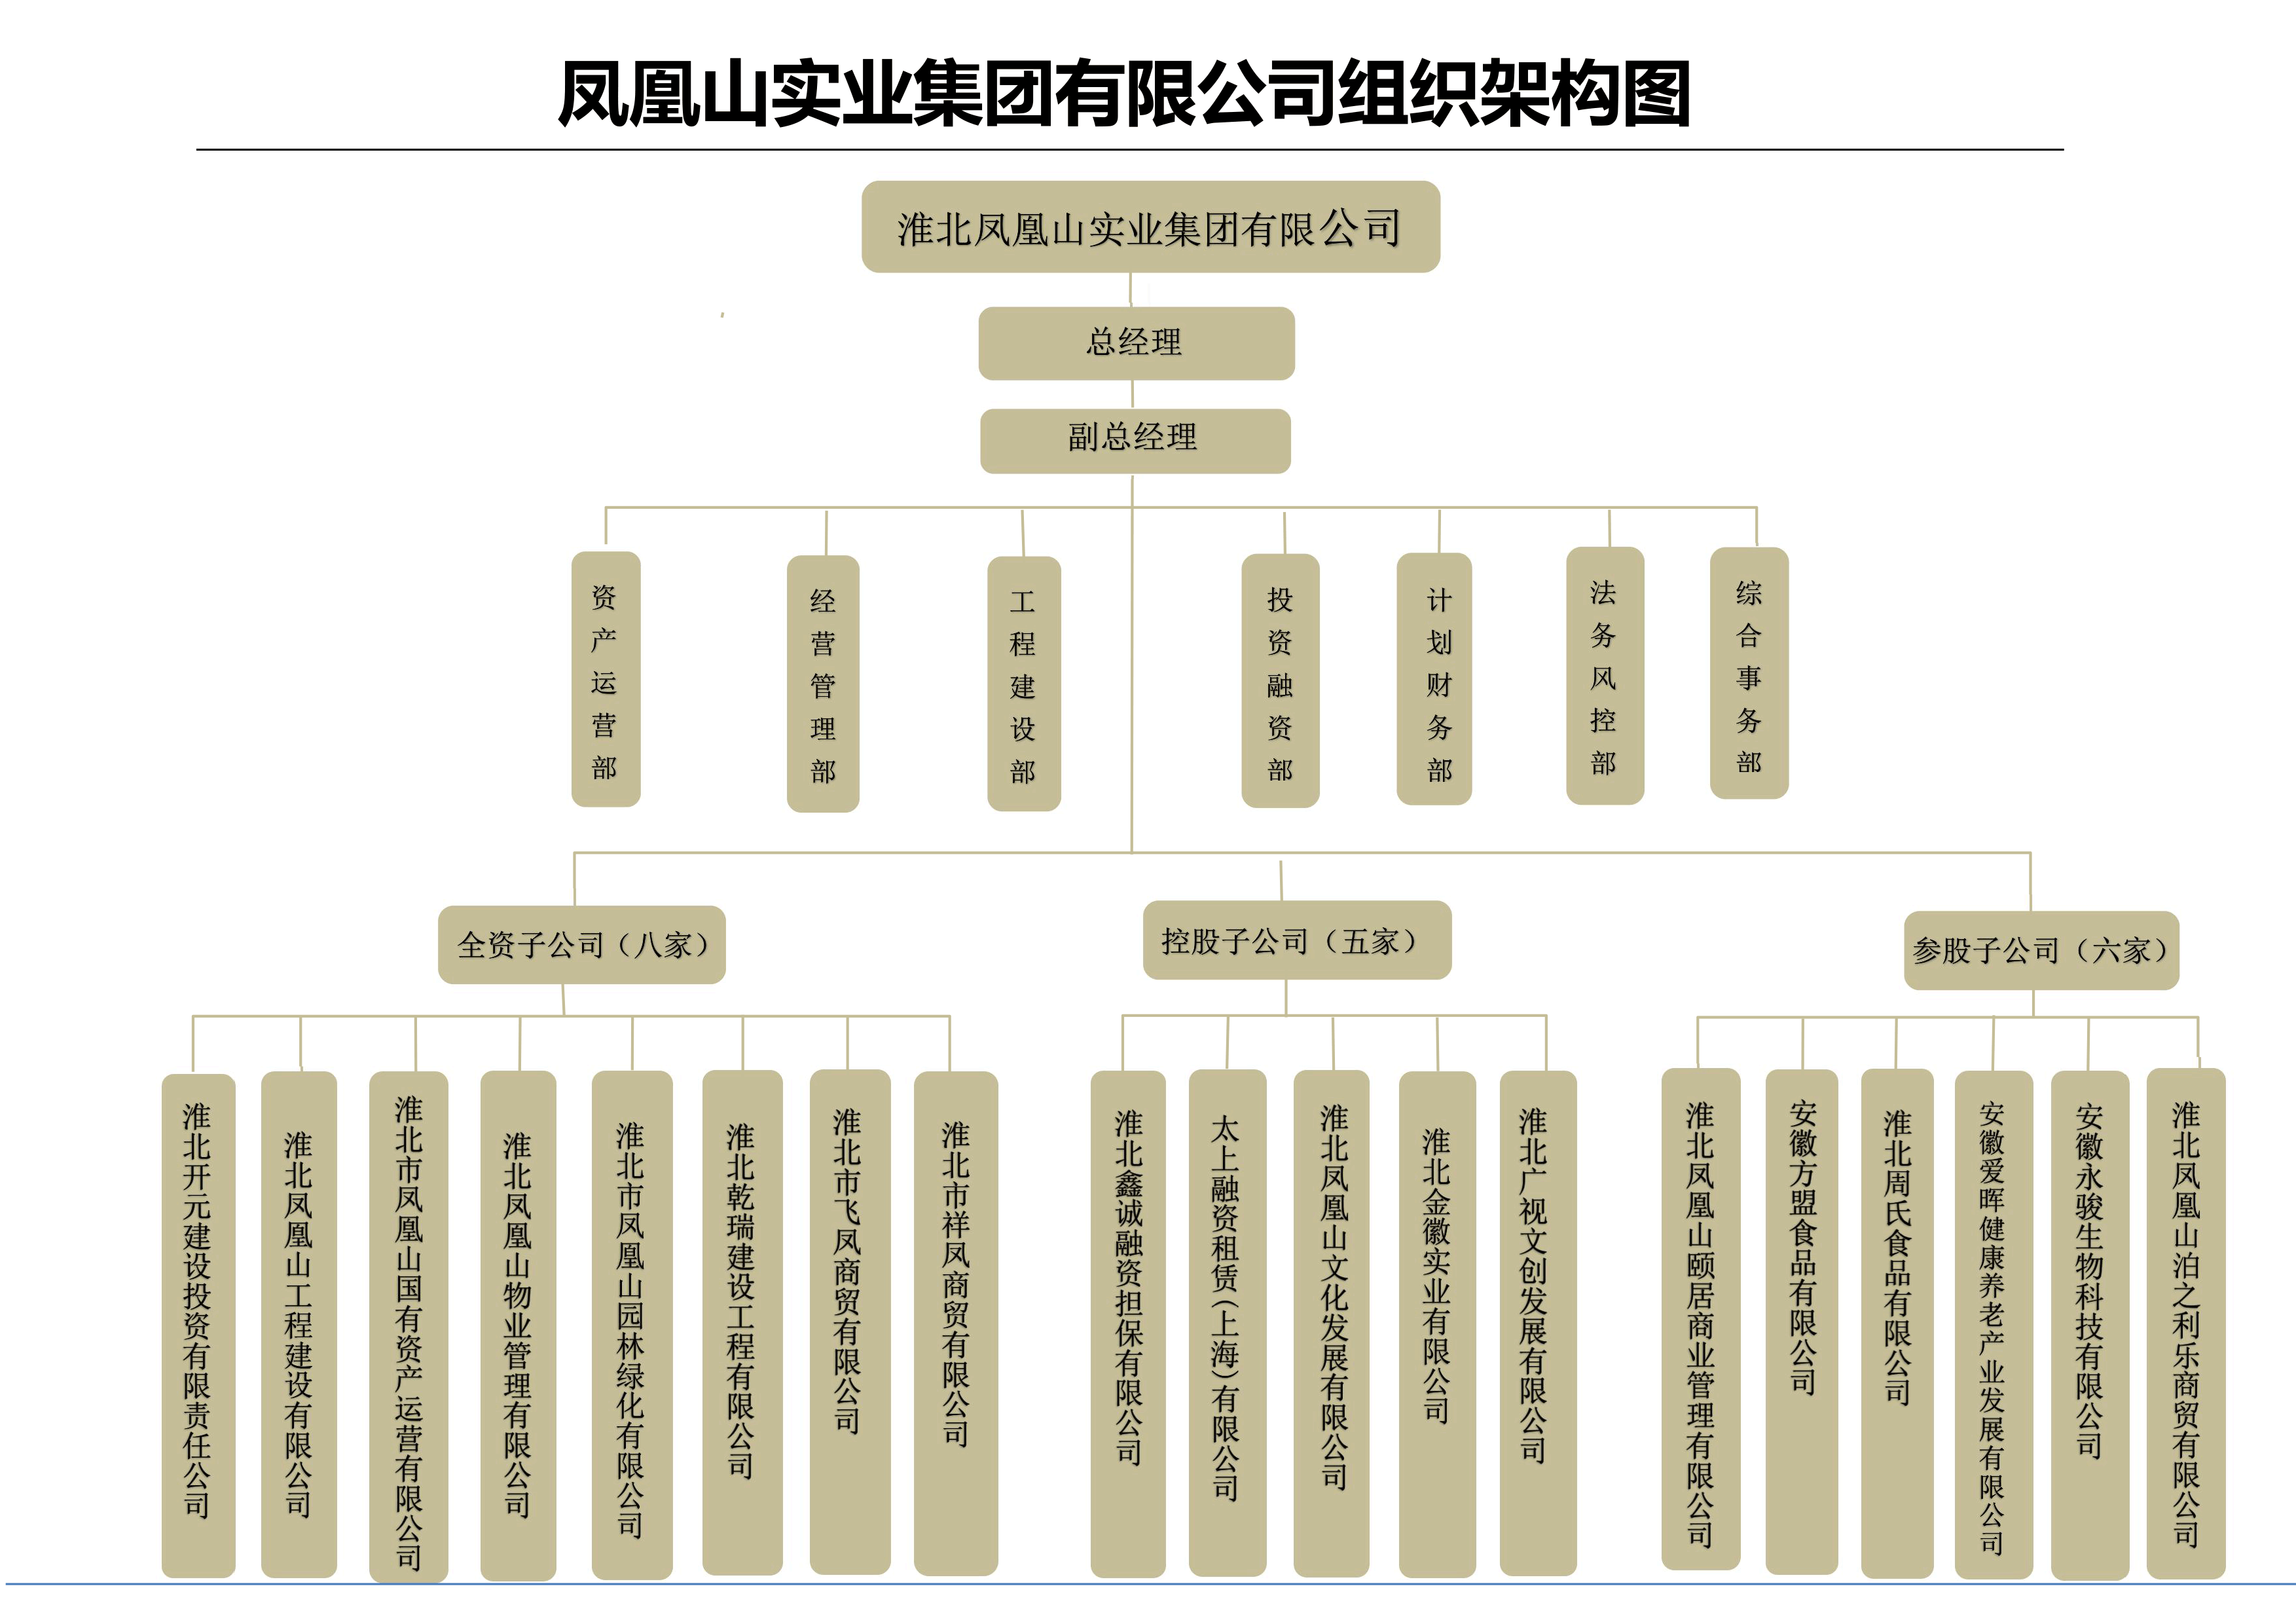 组织架构图最终版.png